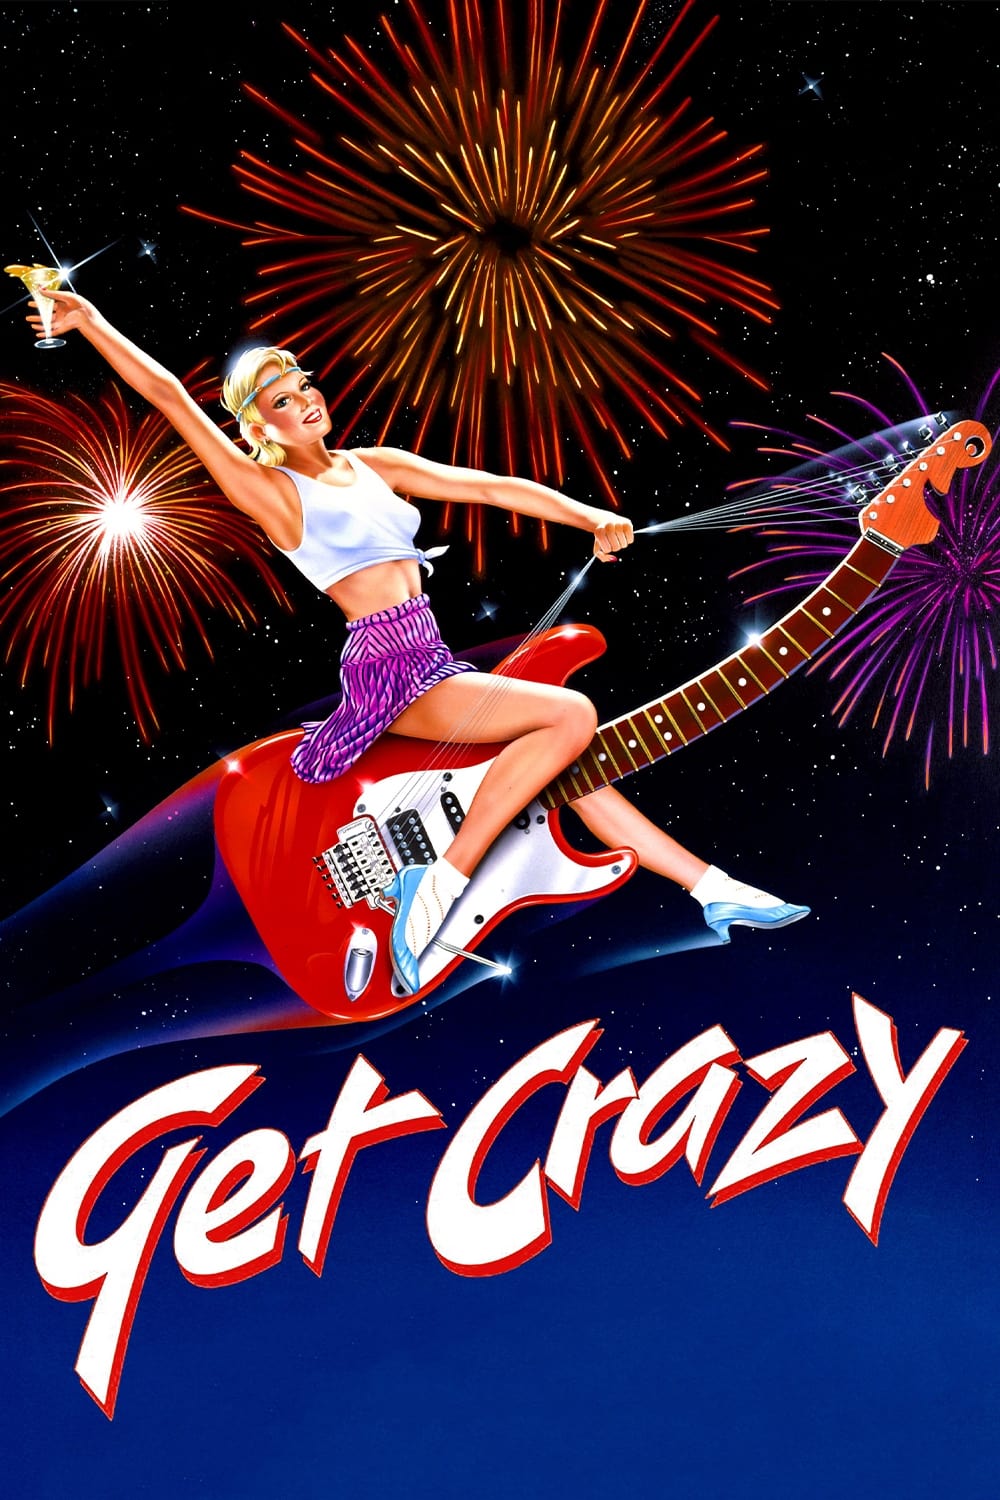 Get Crazy: Na Zorra do Rock (1983)